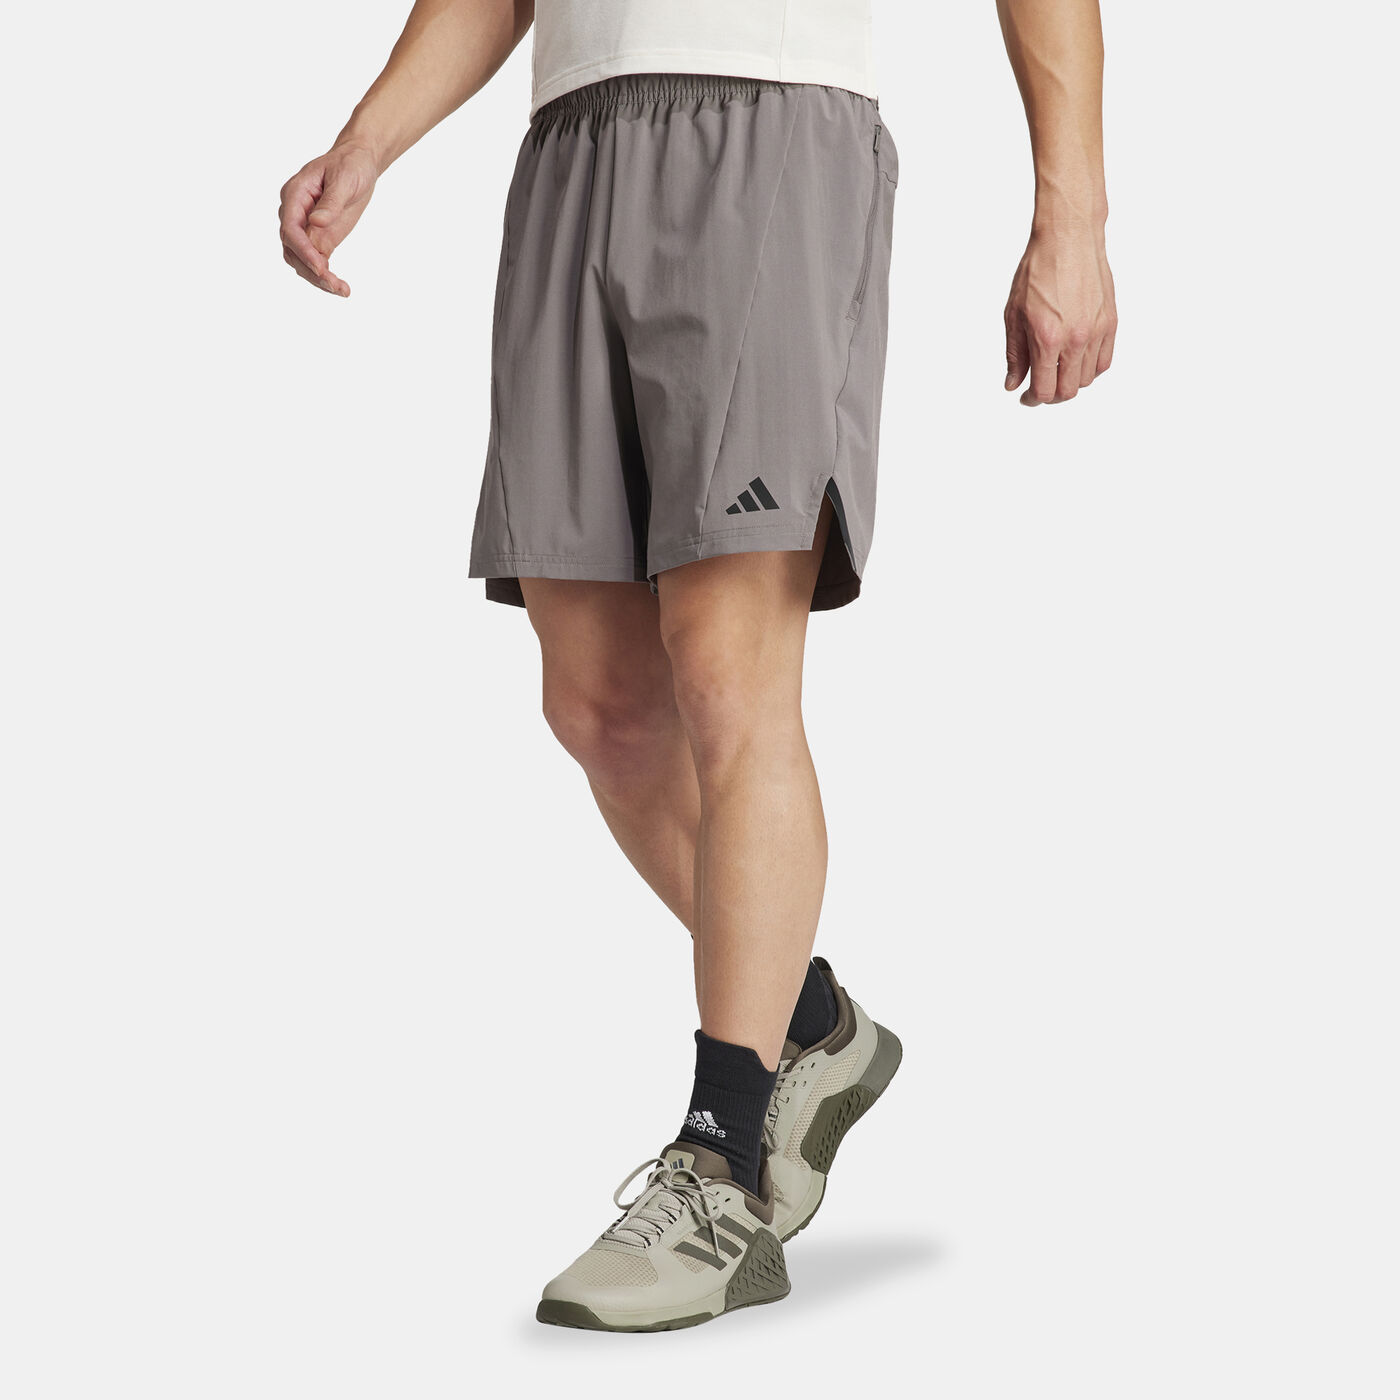 Men's Designed for Training Shorts